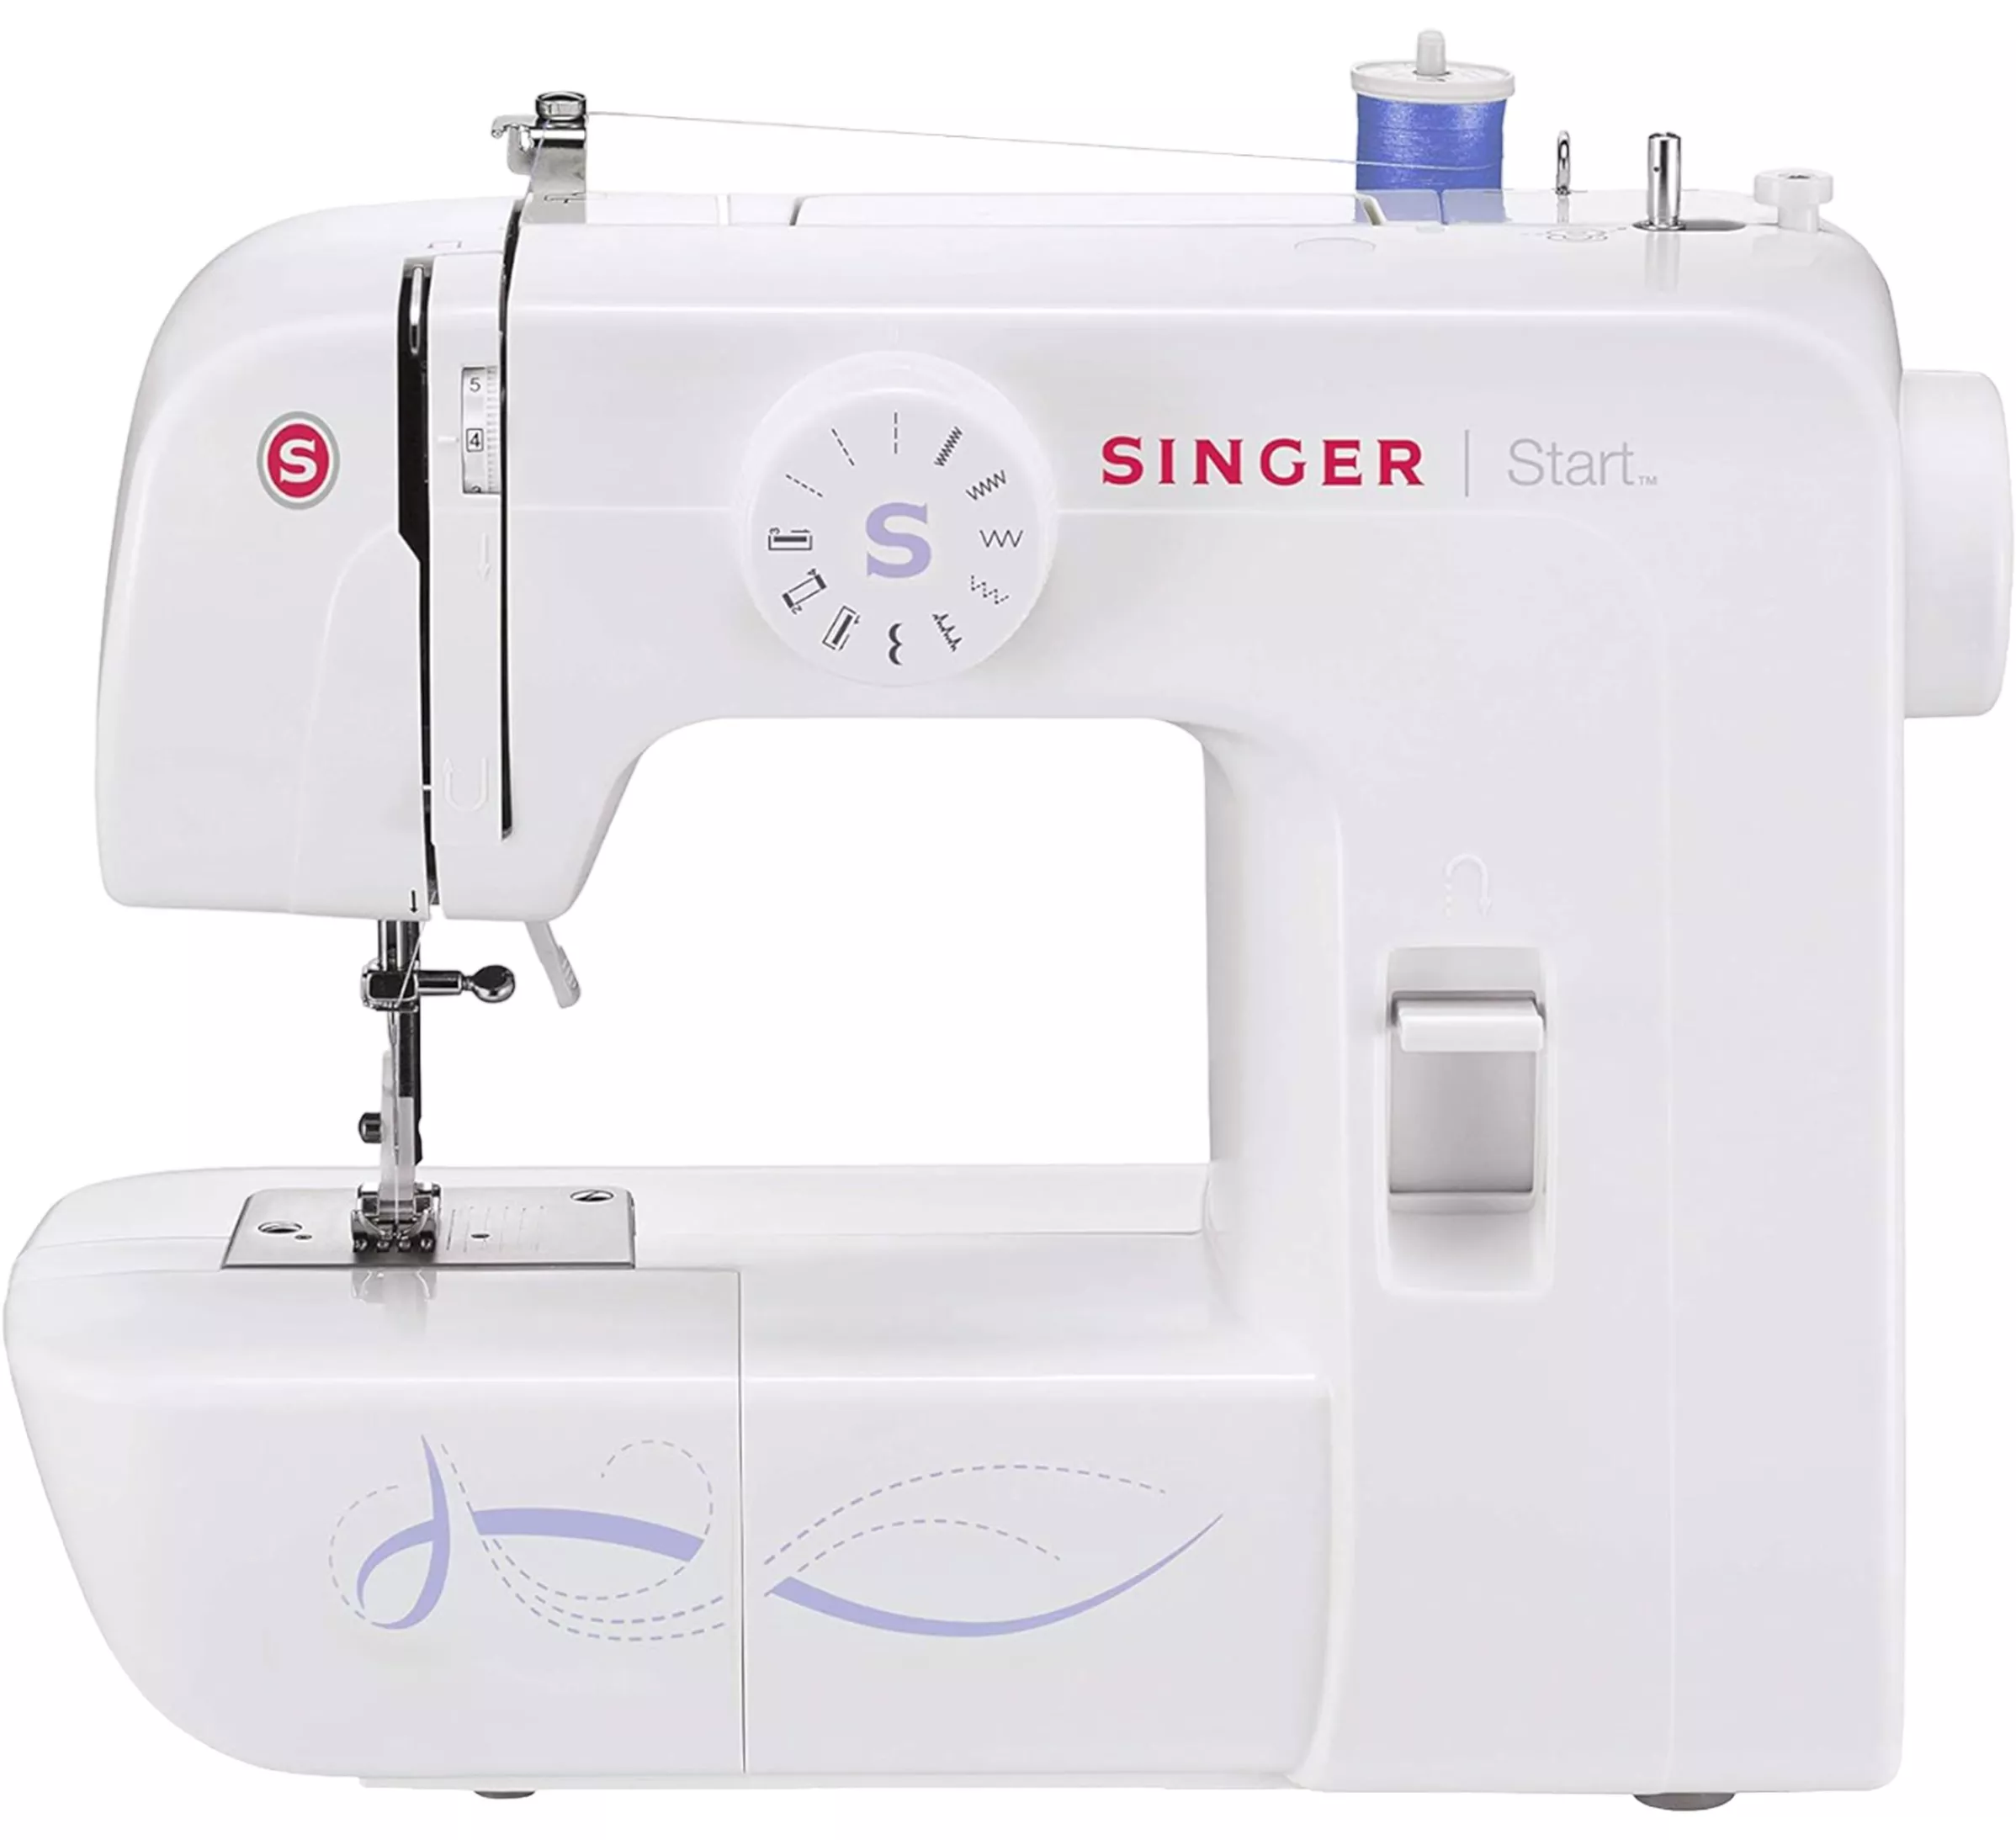 Singer maquina de coser 6 puntadas